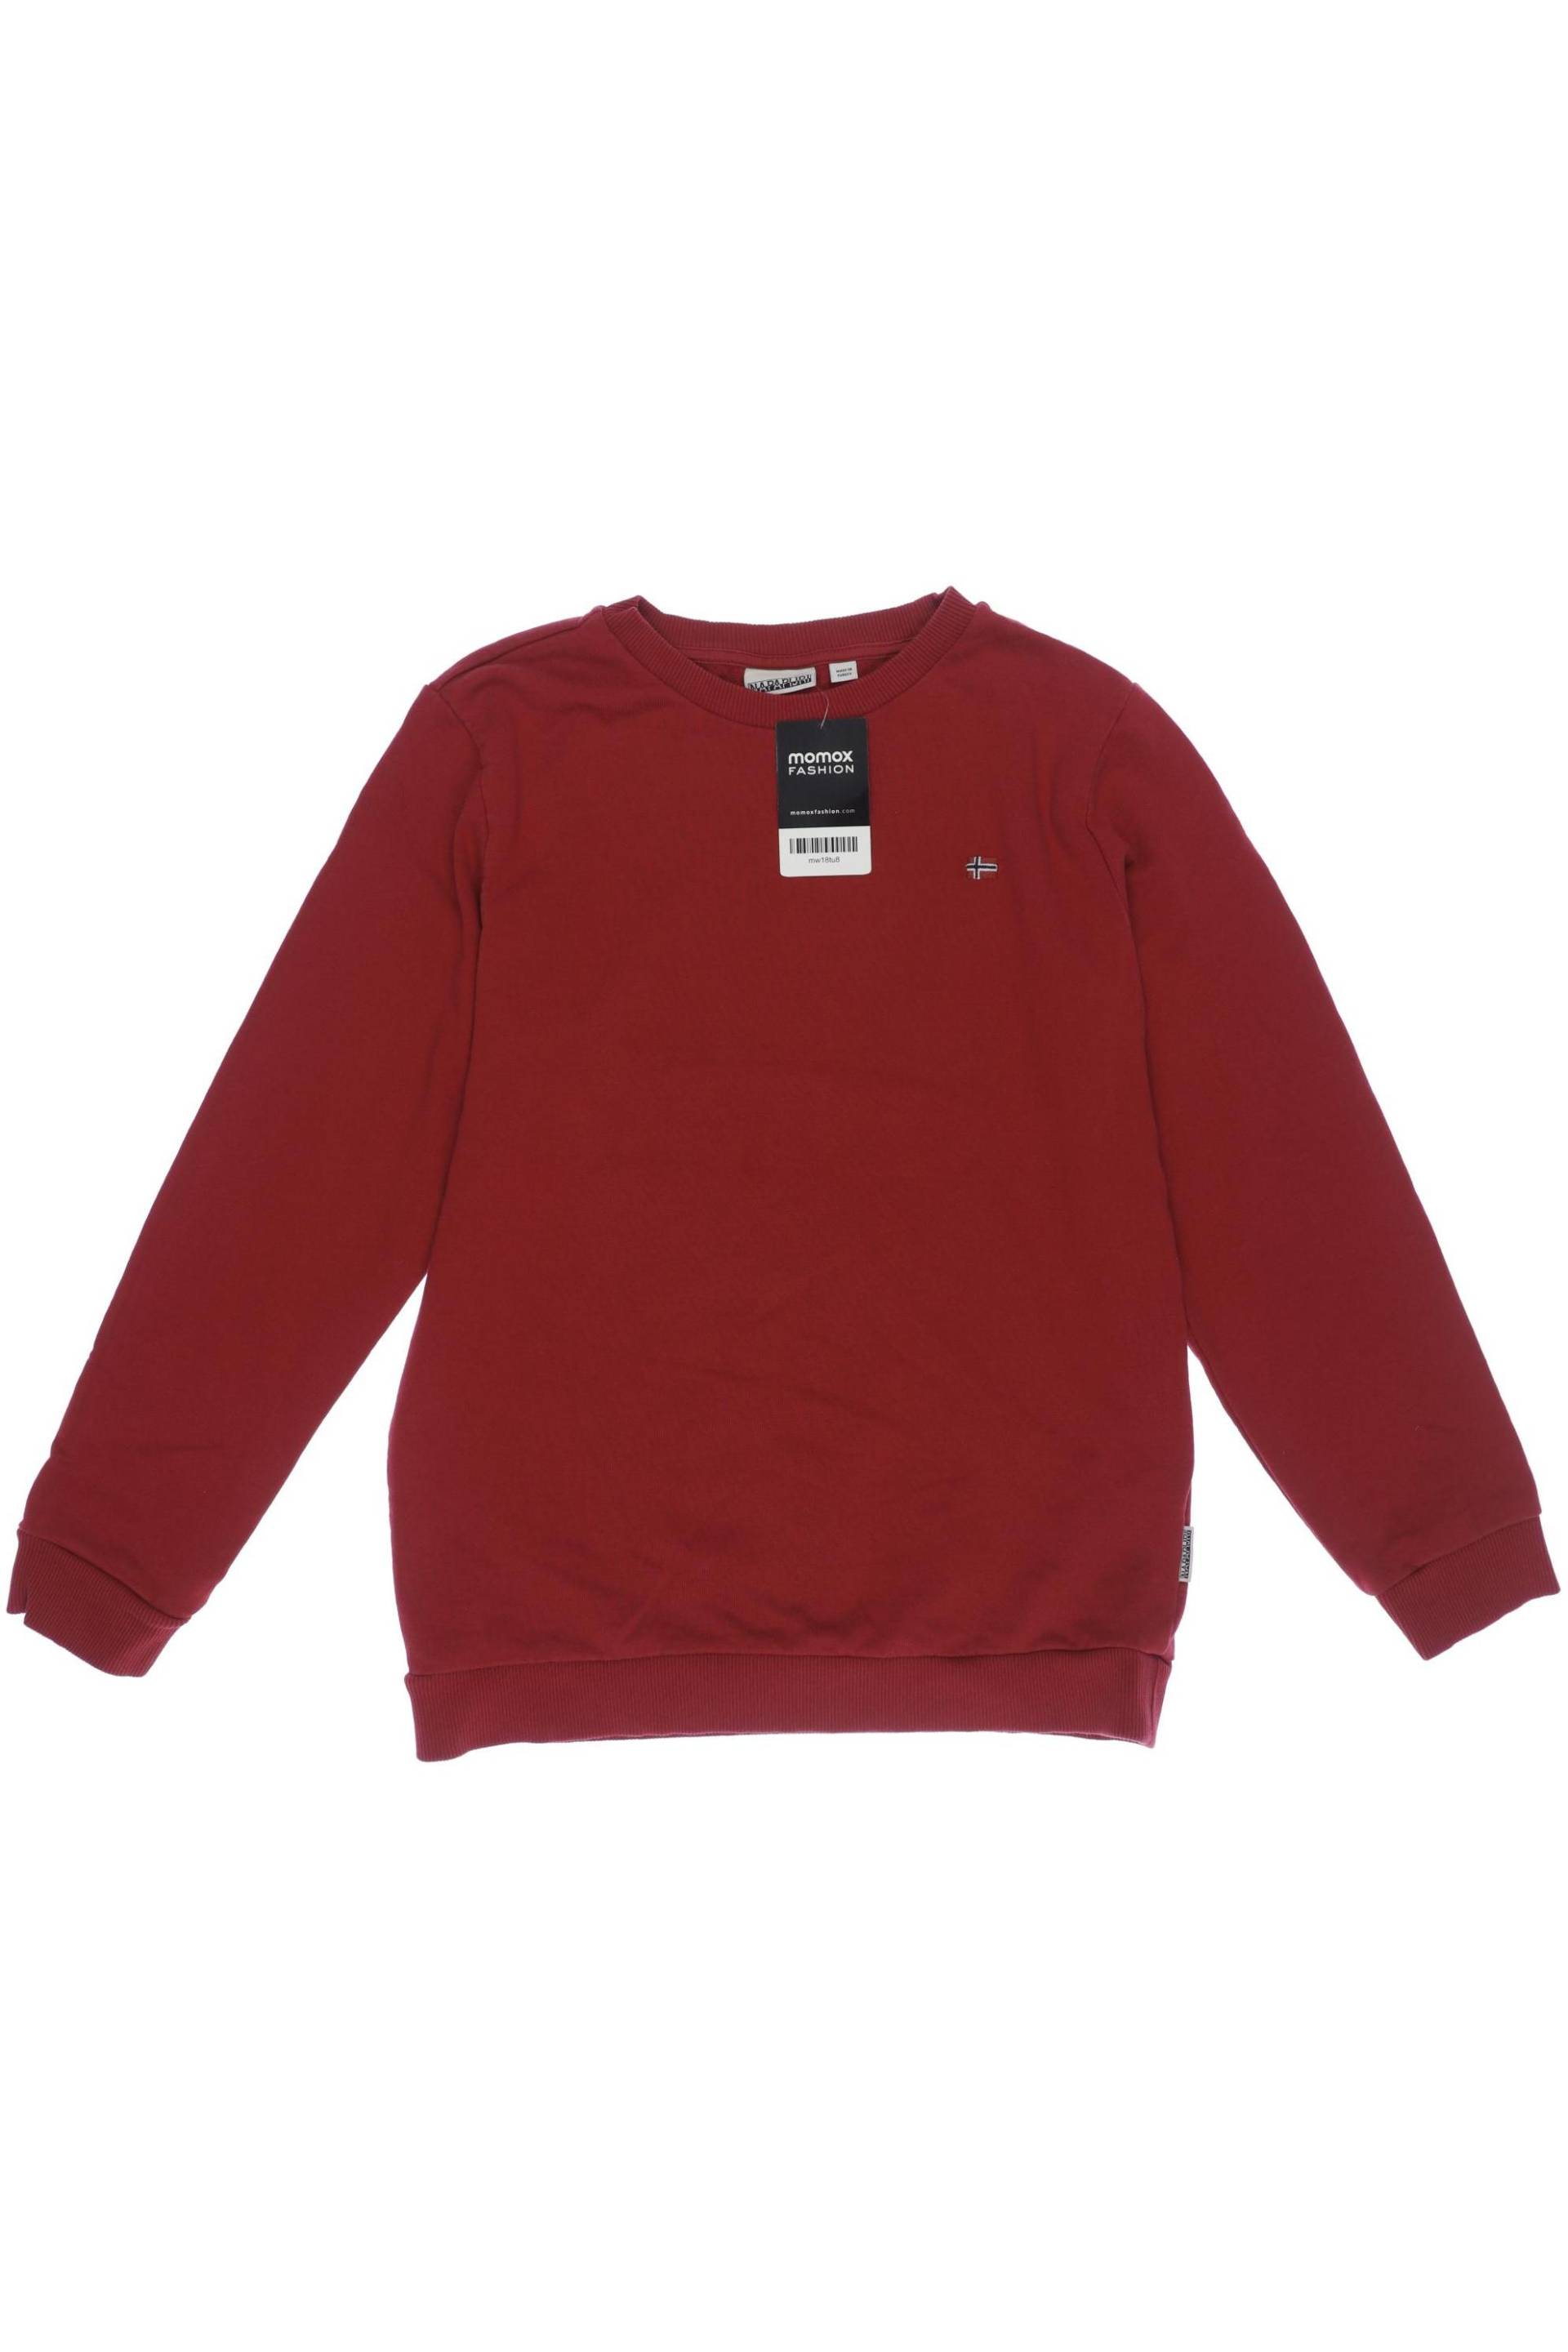 Napapijri Jungen Hoodies & Sweater, rot von Napapijri